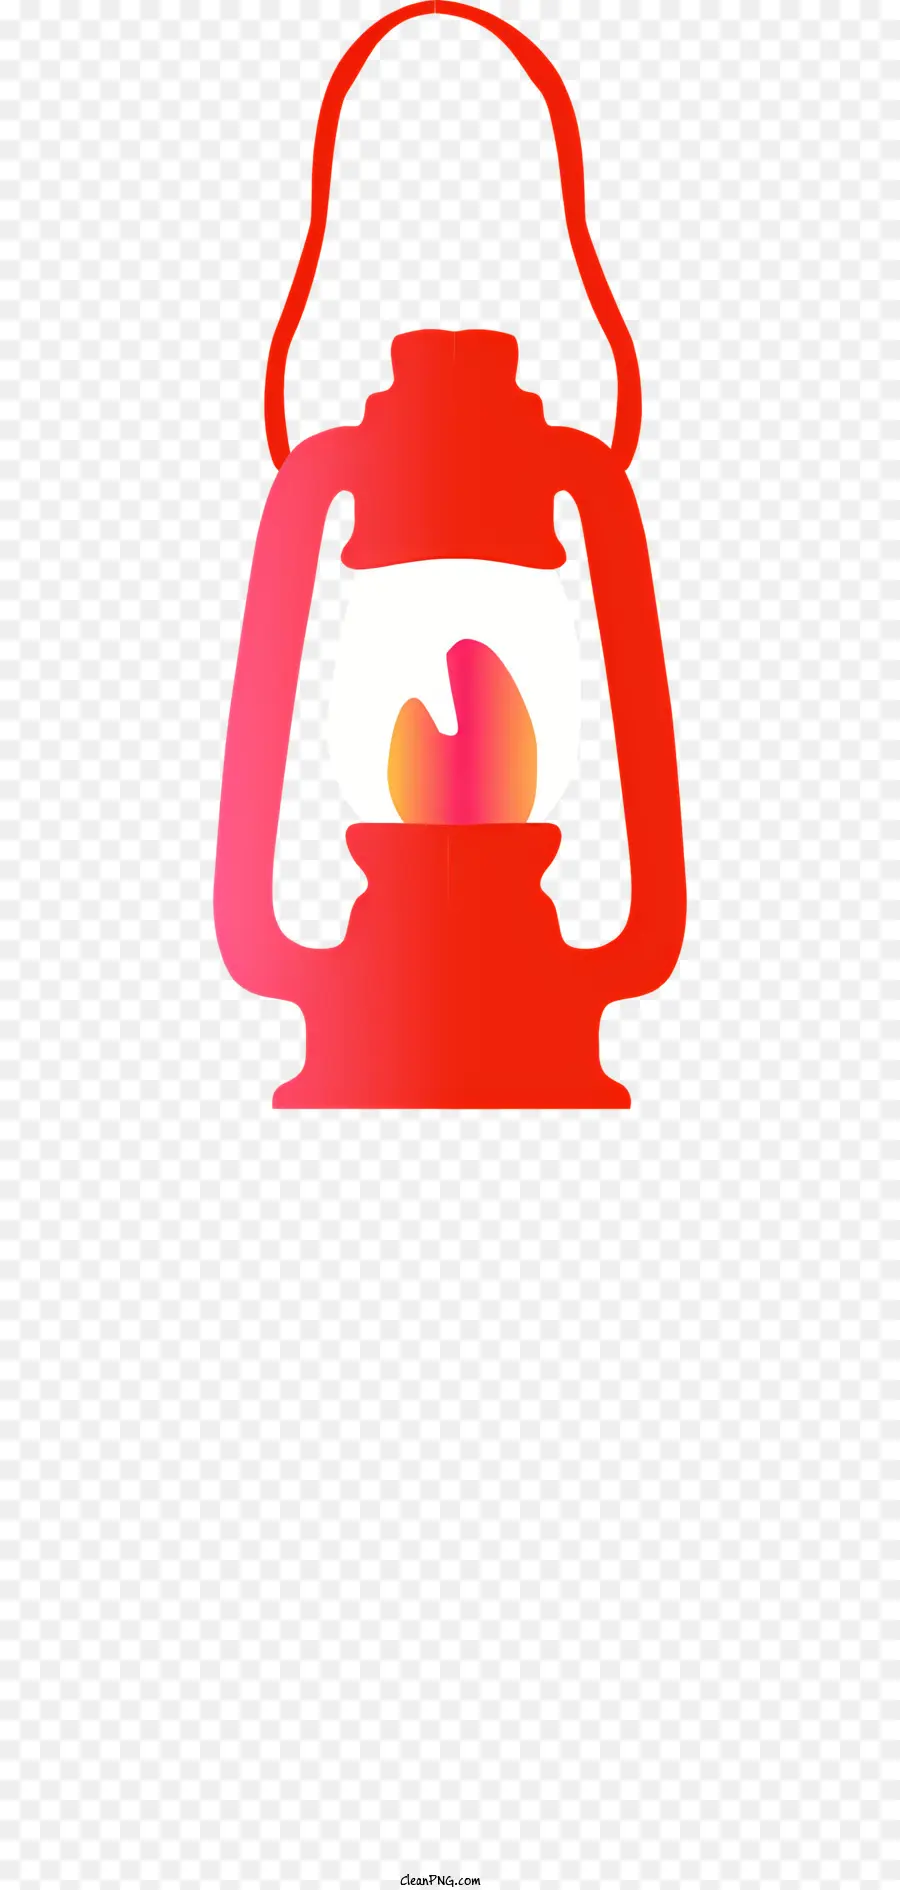 Đèn lồng đèn lồng màu đỏ đèn lồng đèn lồng tròn đèn lồng nhỏ - Tóm tắt: Đèn lồng kim loại màu đỏ với ngọn lửa màu cam nhỏ